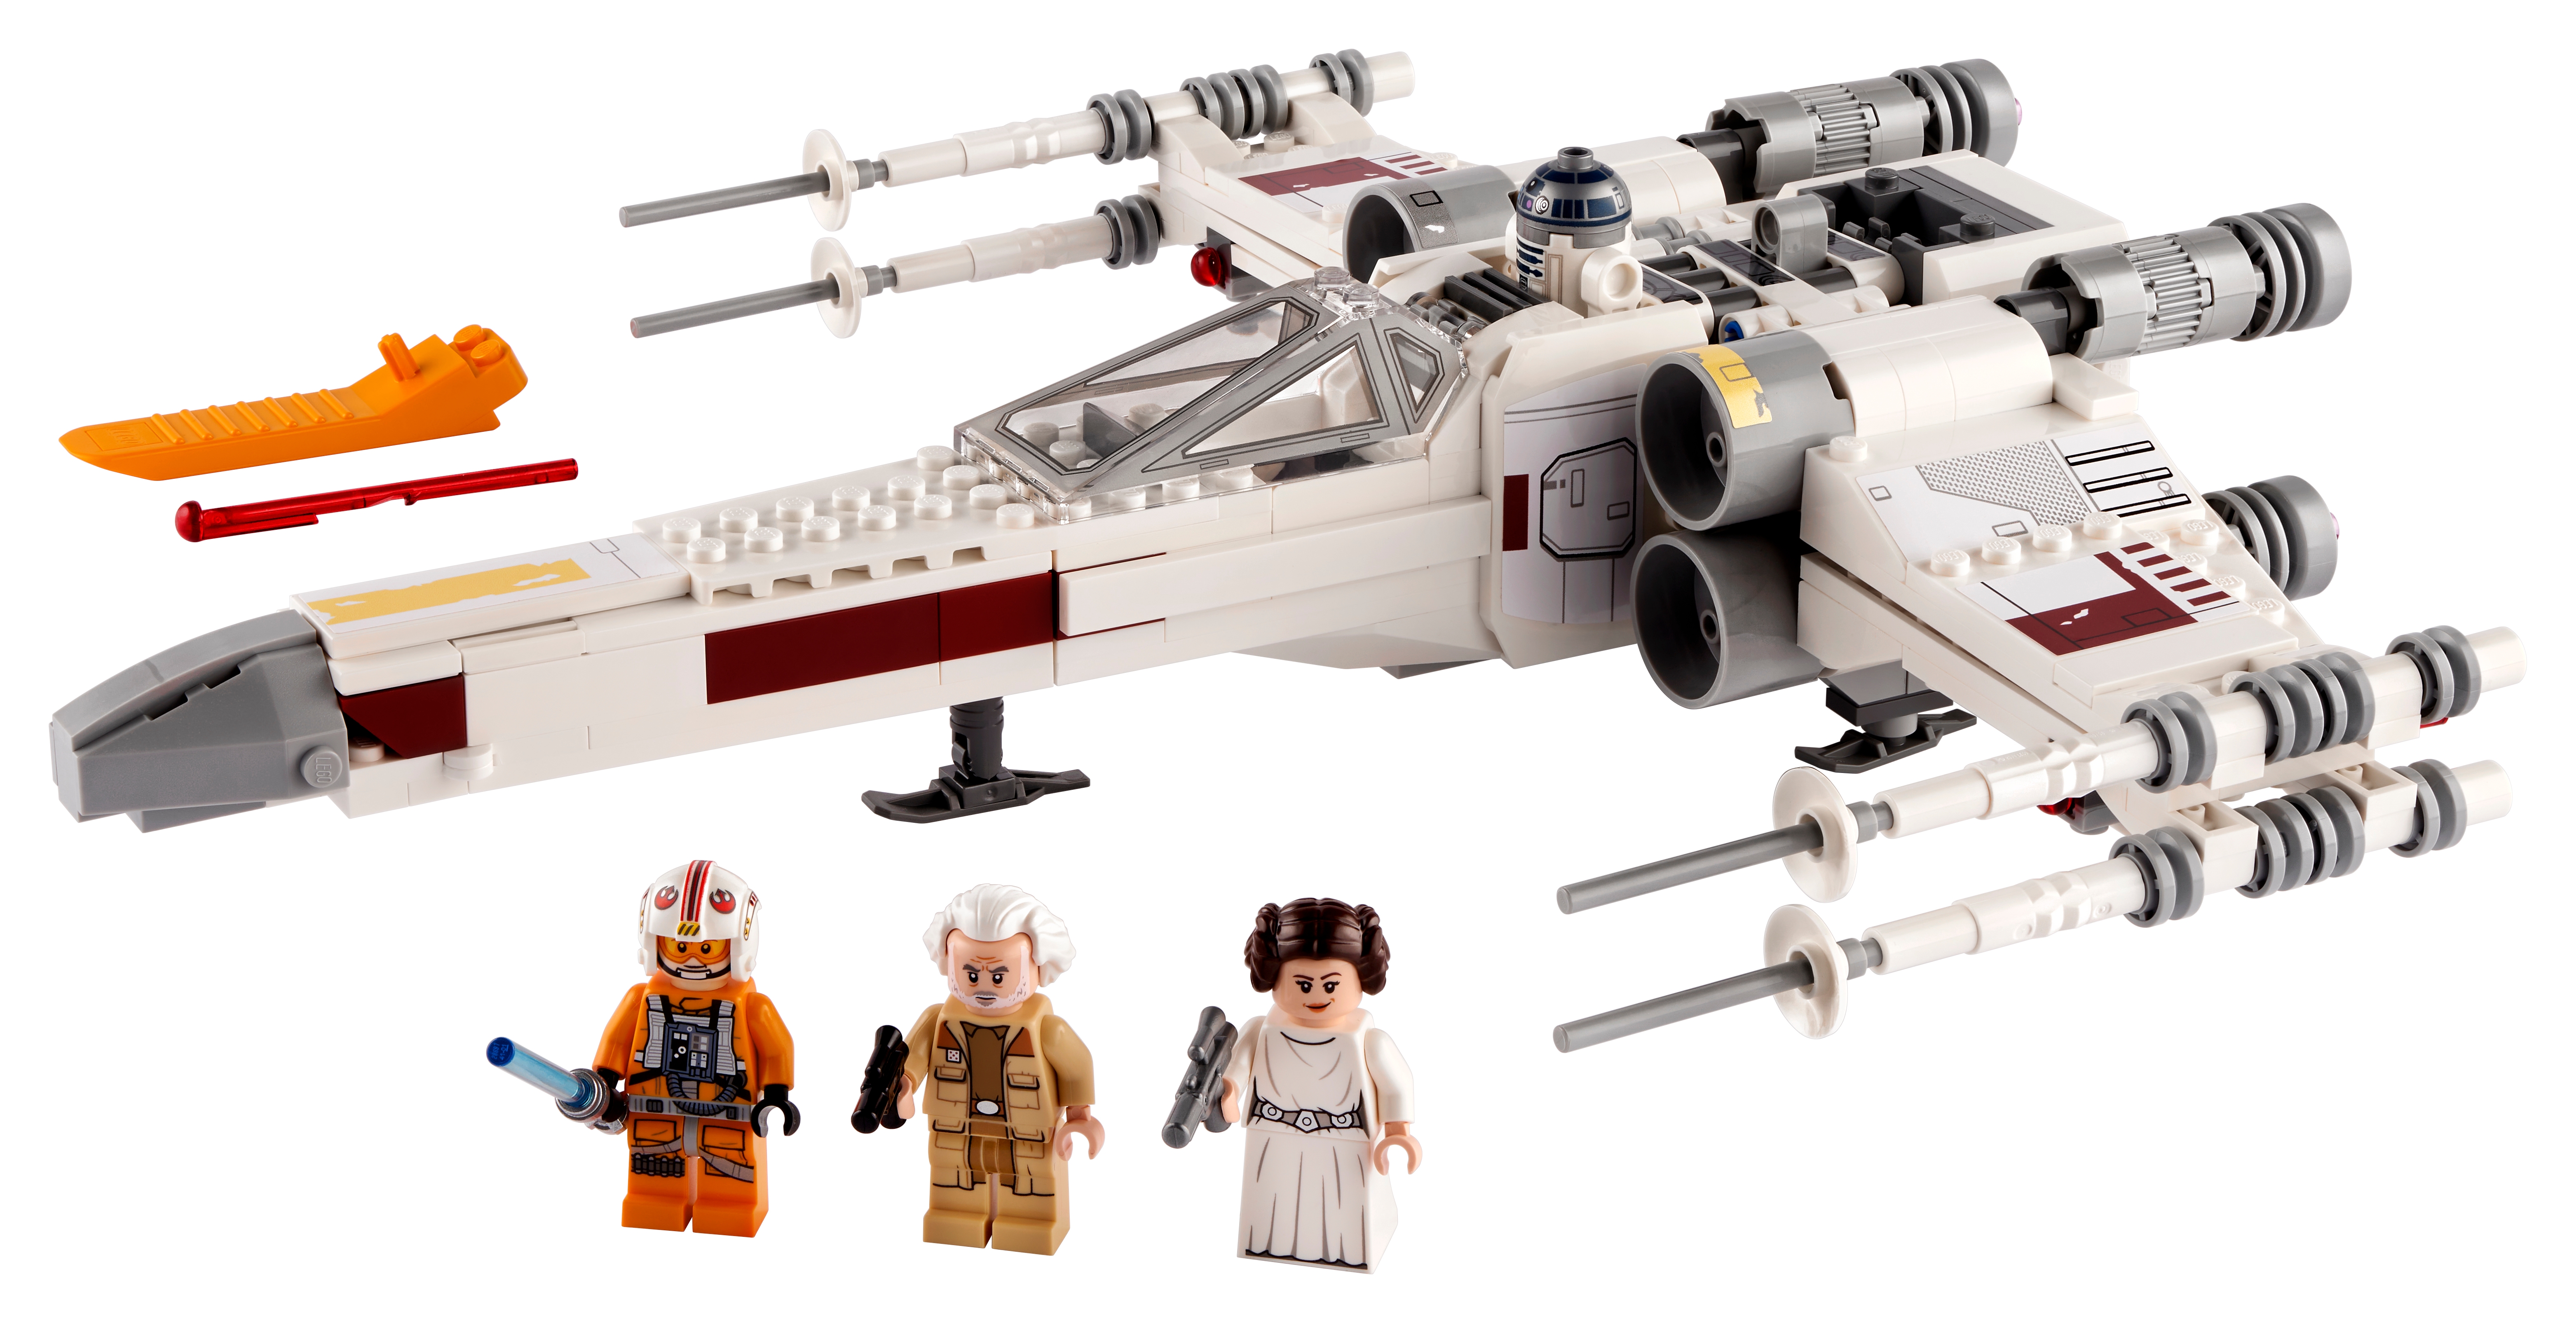 Supporto Acrilico Altezza 15cm Espositore in Acrilico per Lego 75301 Luke Skywalker's X-Wing Fighter espositore Vari Angoli e Posizioni Regolabili 